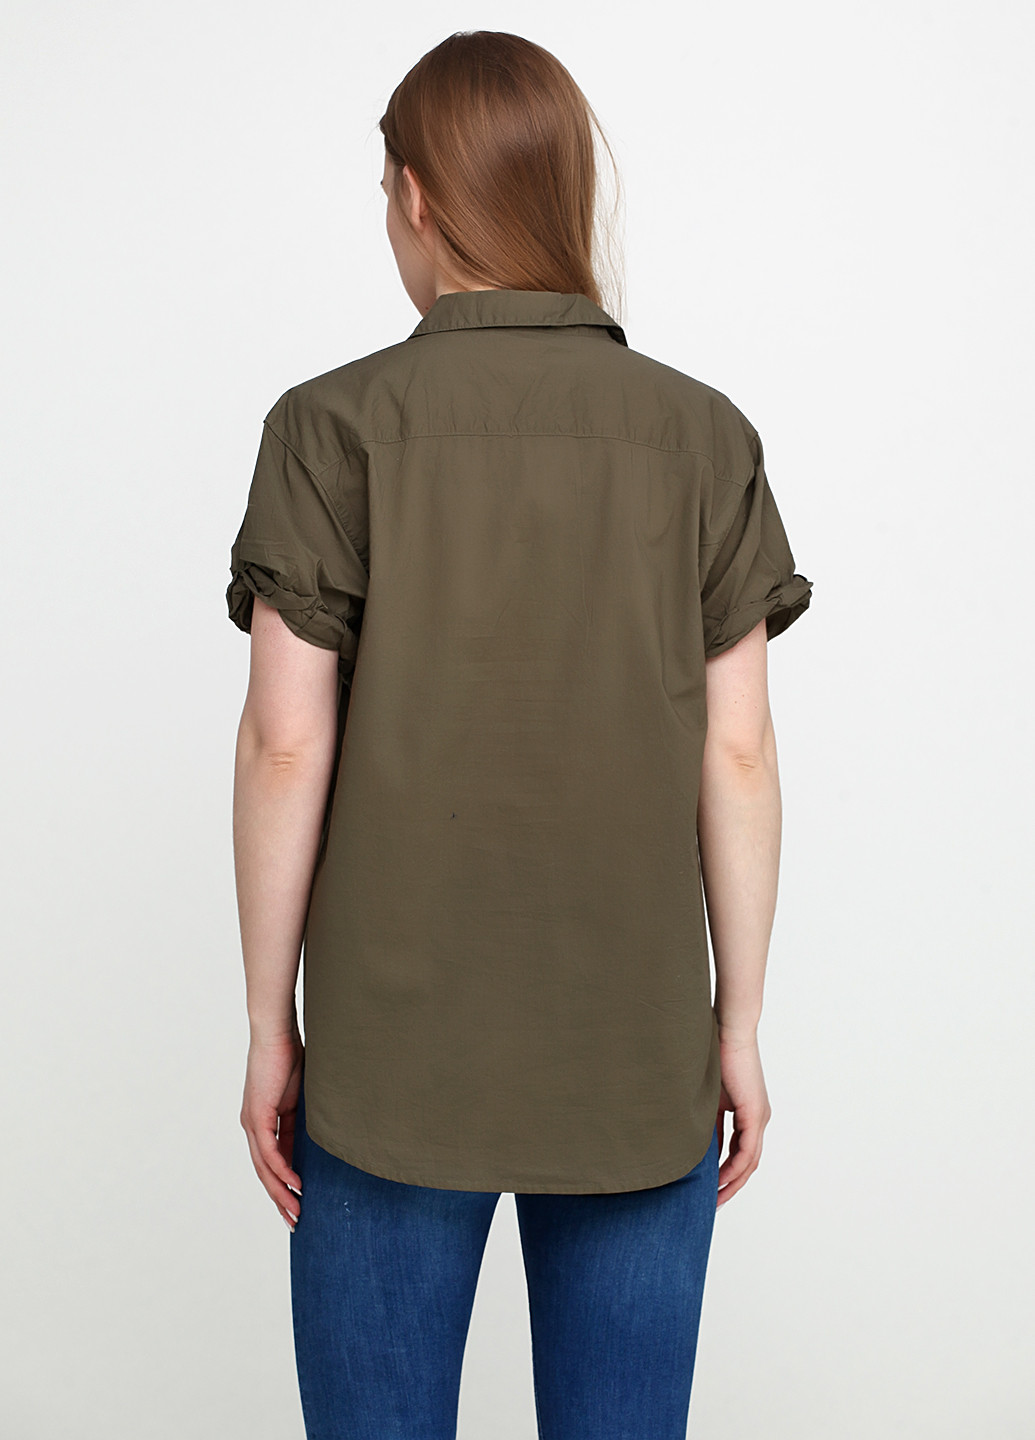 Оливковая (хаки) летняя рубашка с к/р H&M